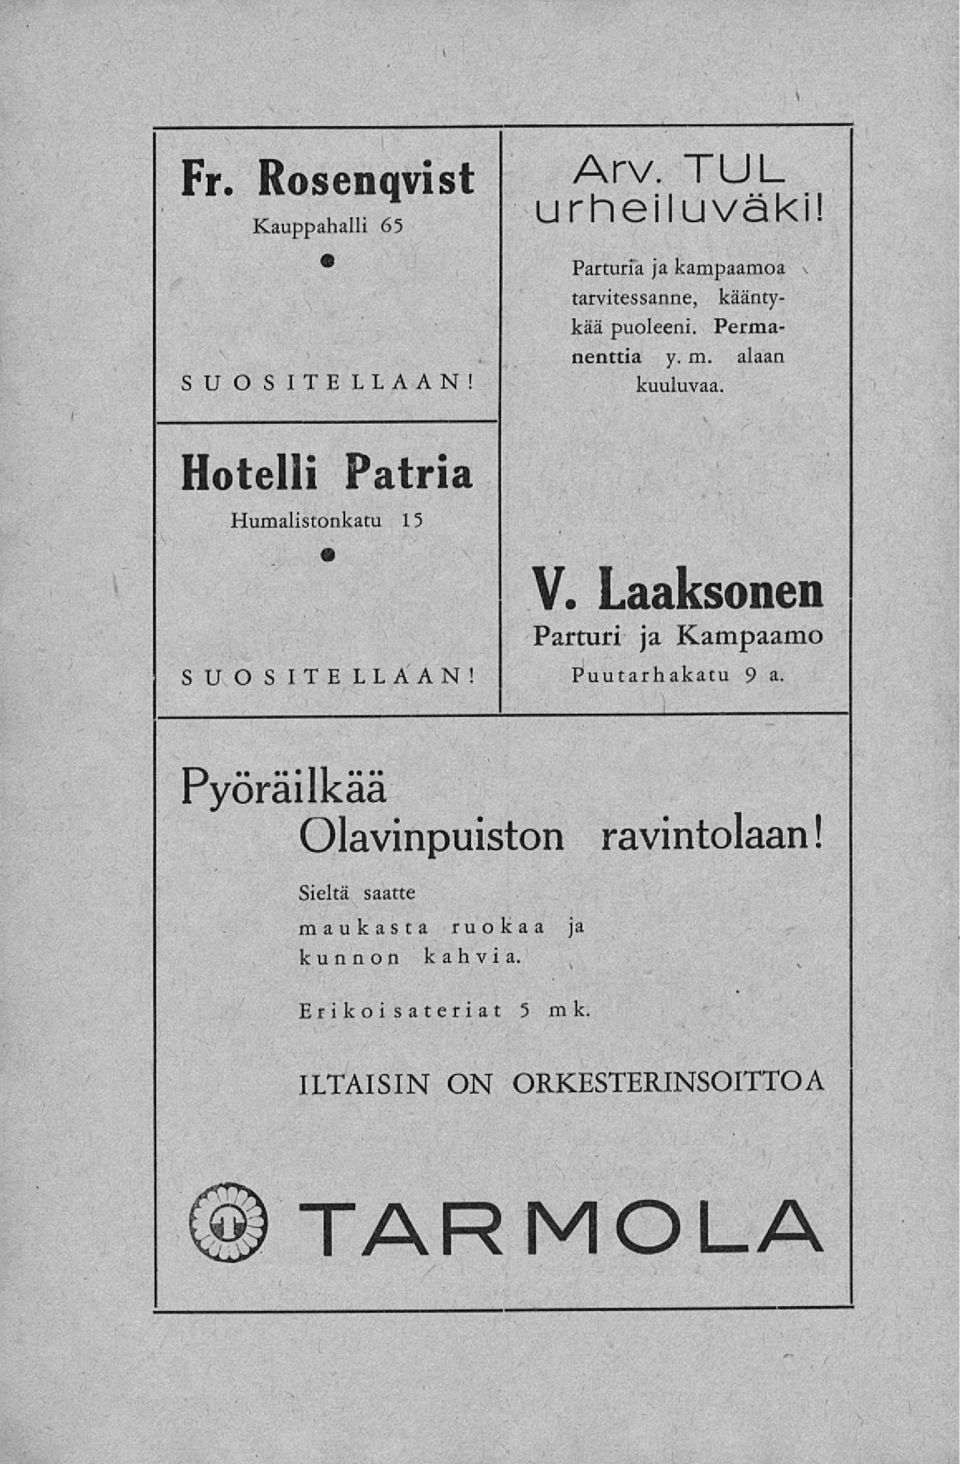 A Hotelli Patria Humalistonkatu 15 SUOSITELLAAN! V. Laaksonen Parturi ja Kampaamo Puutarhakatu 9 a.